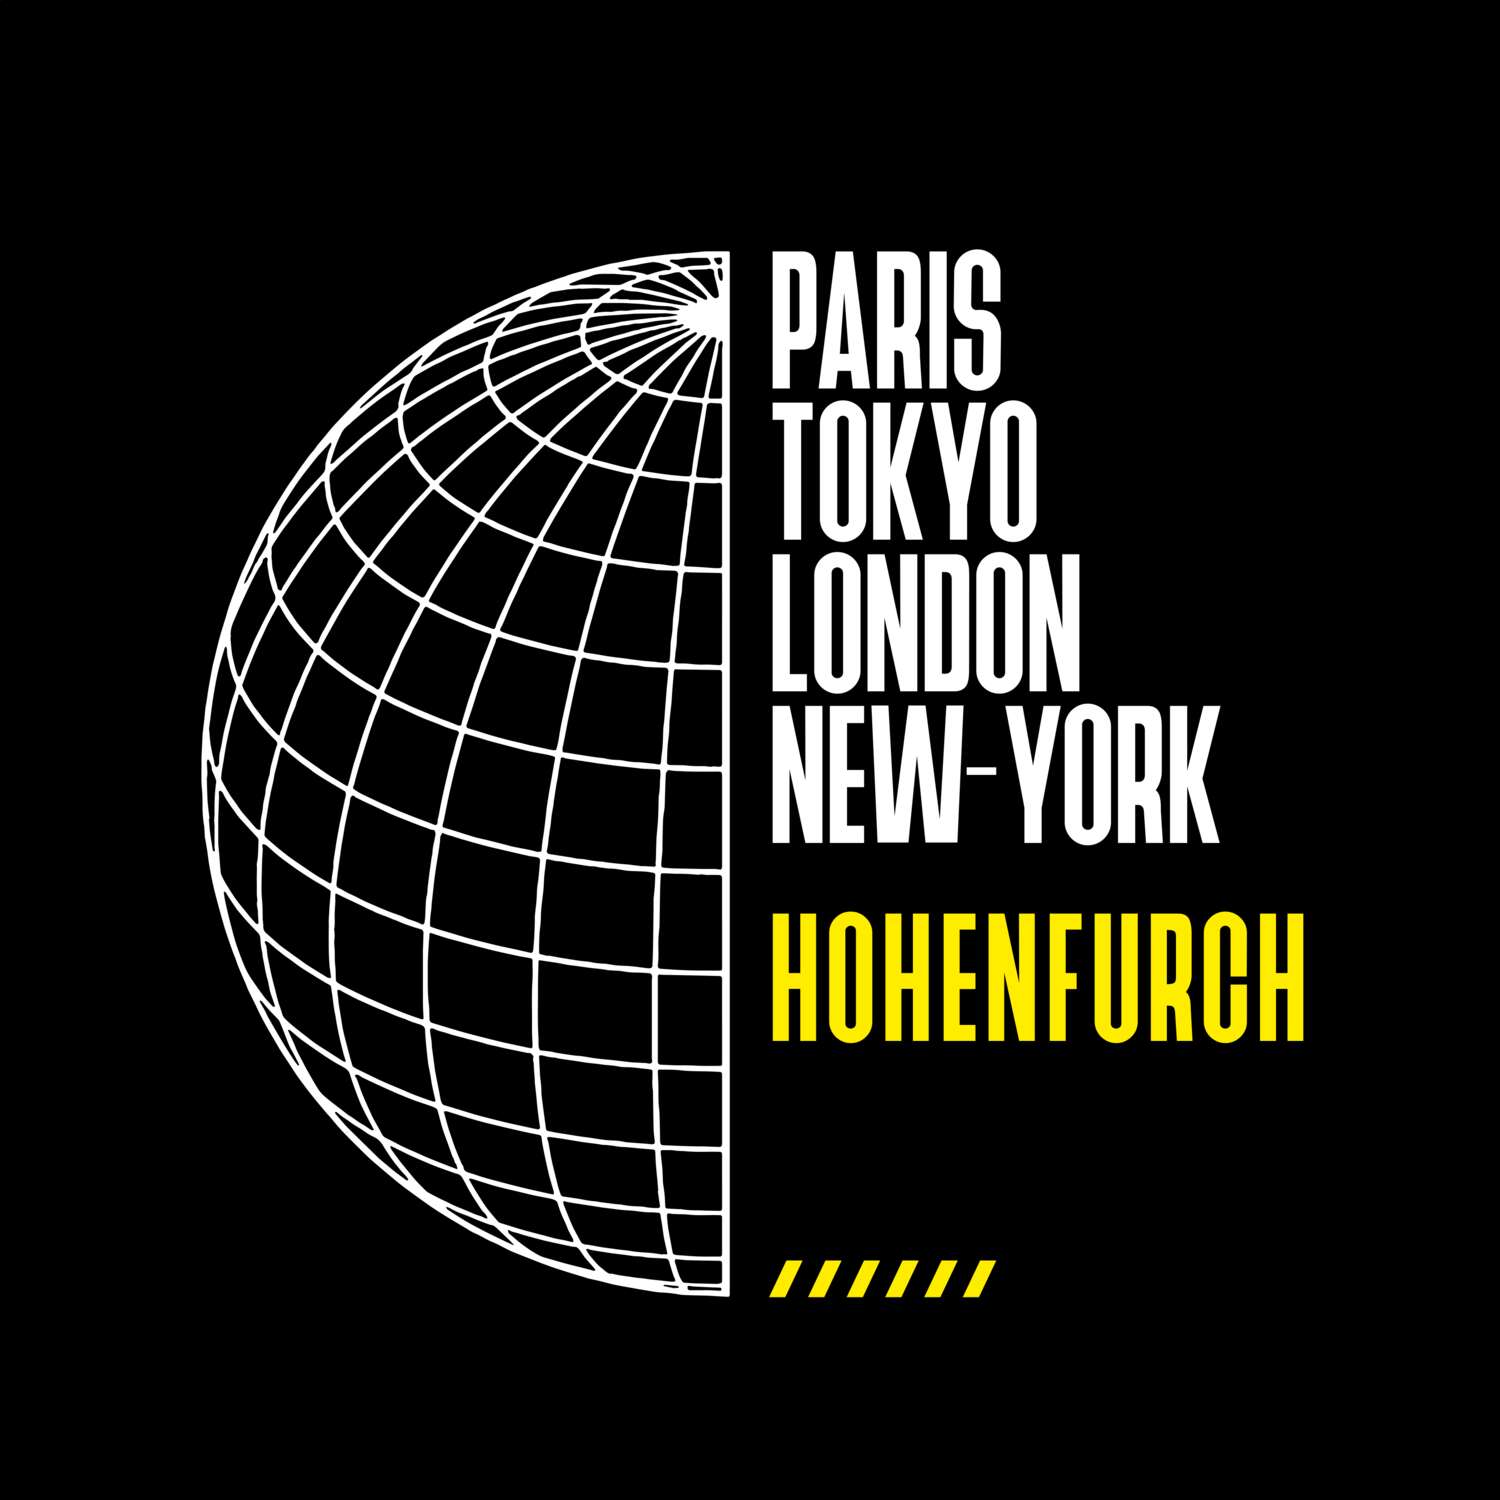 Hohenfurch T-Shirt »Paris Tokyo London«